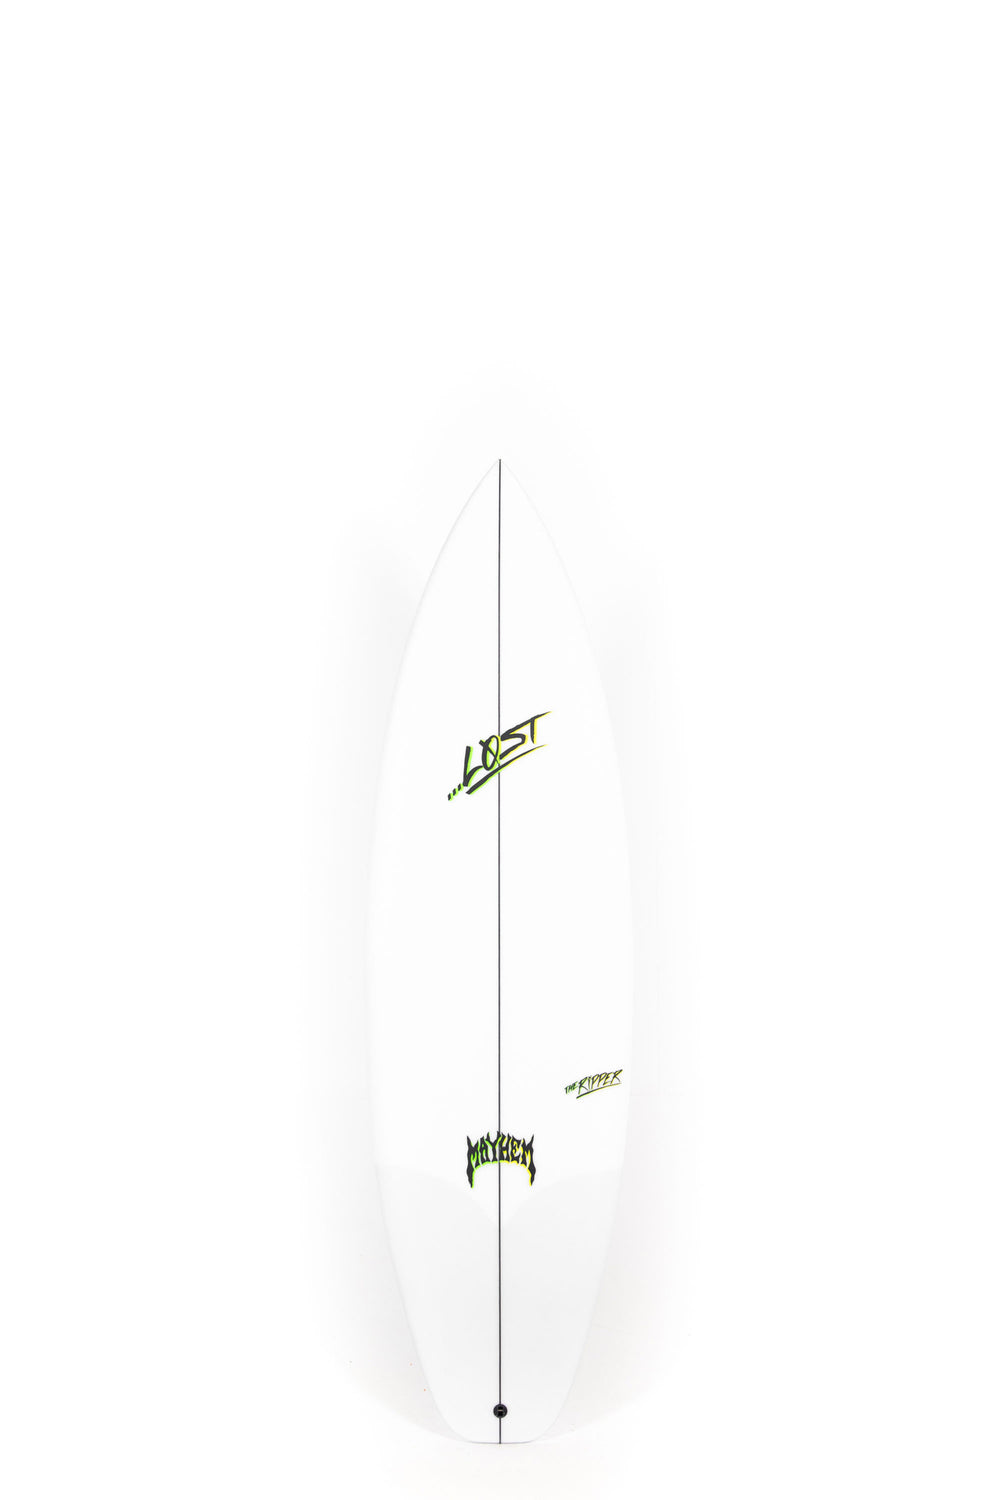 Pukas Surf Shop - Lost Surfboard - THE RIPPER by Matt Biolos - 6'2